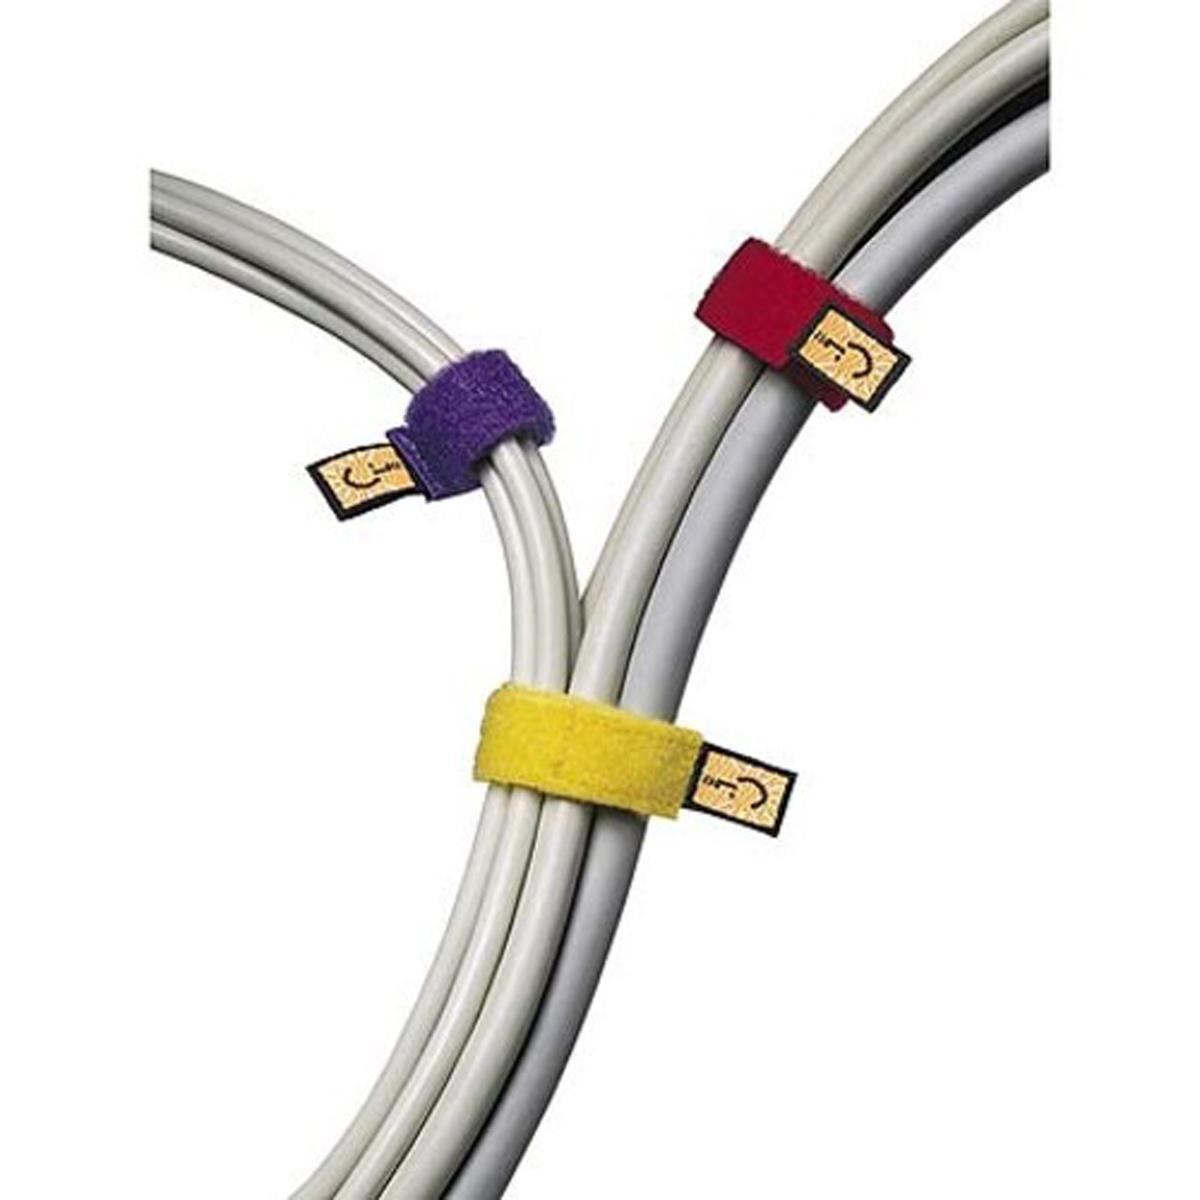 Самоприкрепляющиеся стяжки Case Logic для удержания кабелей, разные цвета, № 3200010